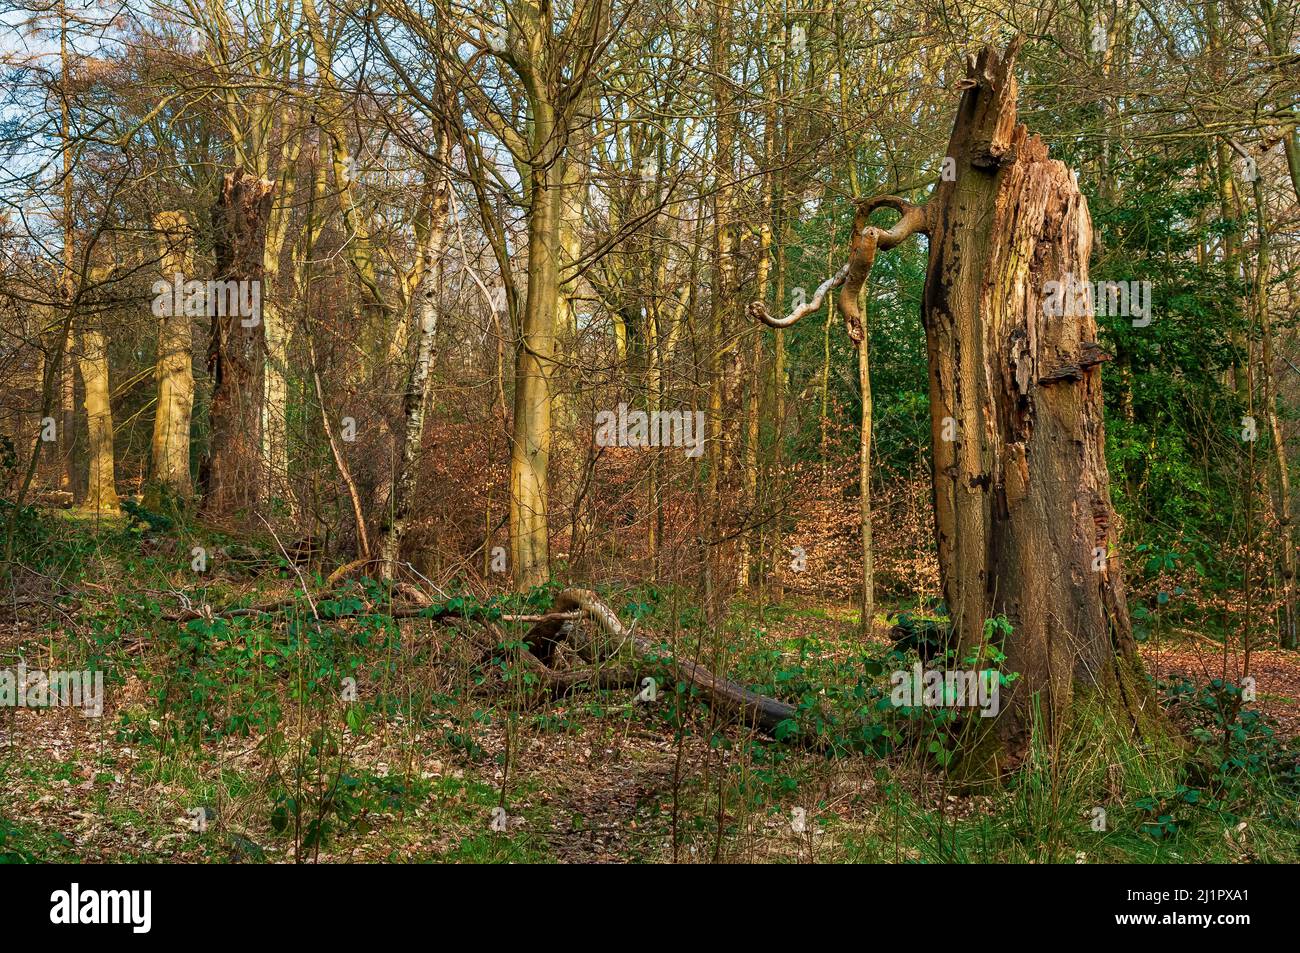 Moncone di alberi morti, rami aggrovigliati e tronchi di alberi misti nella luce del sole del pomeriggio in Ecclesall Woods, antico bosco vicino Sheffield. Foto Stock